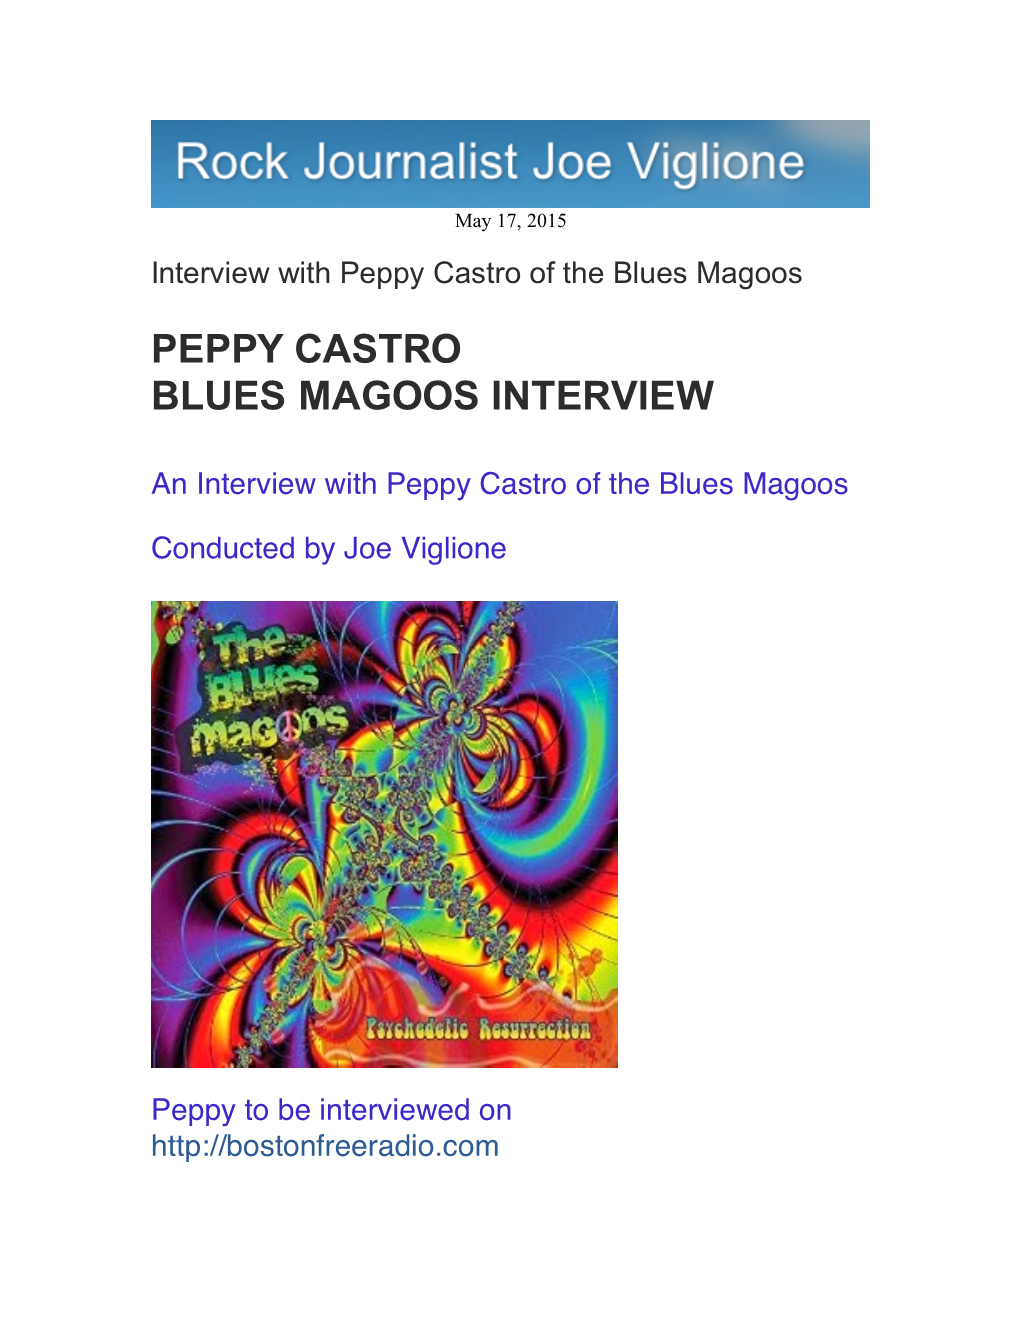 Joe Viglione Blogspot, Peppy Castro Interview